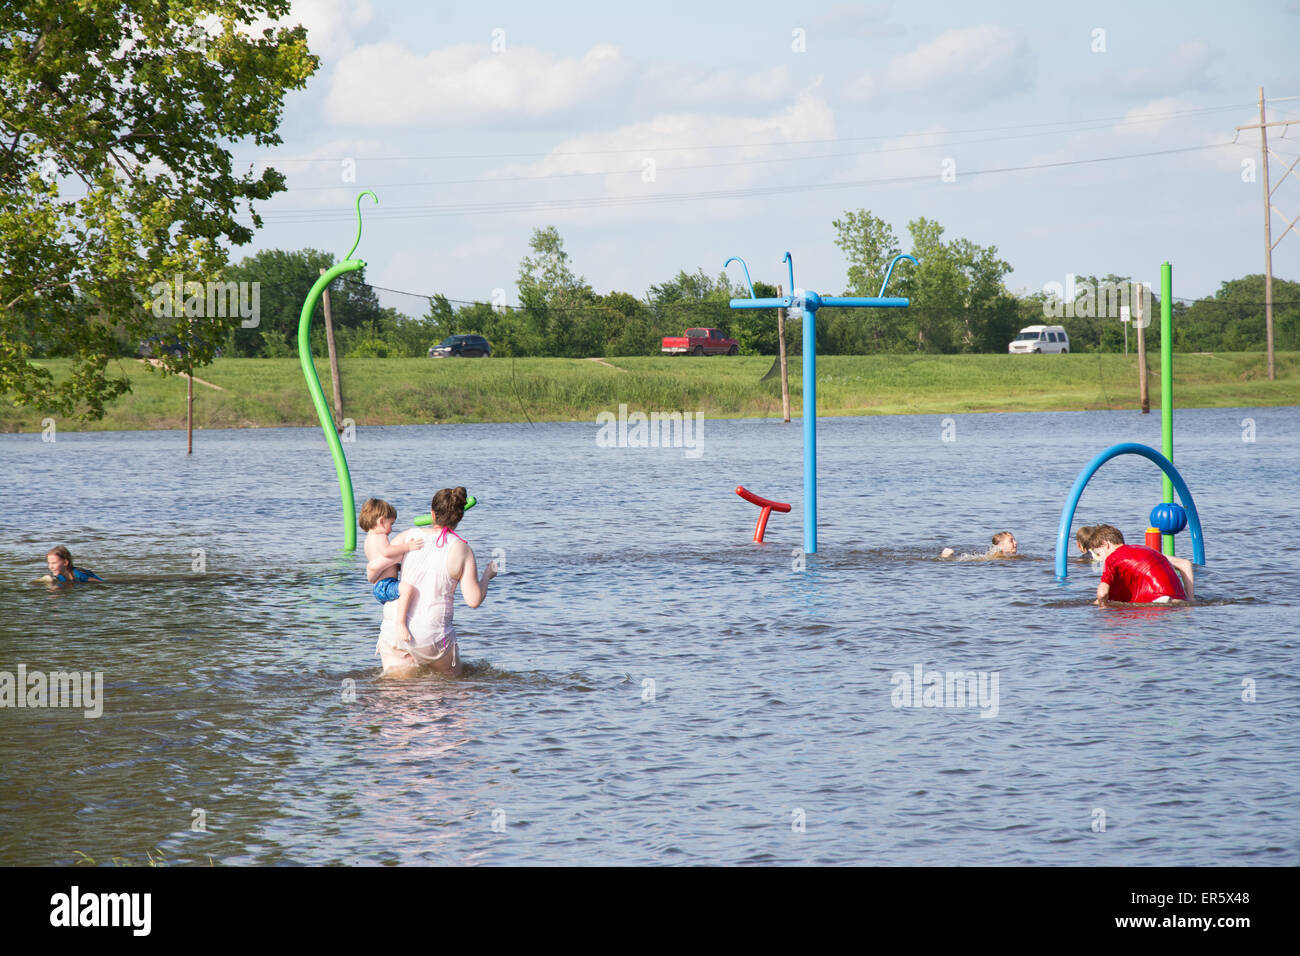 Mannford, Oklahoma, USA. 27 mai, 2015. Des enfants jouent sur l'aire de jeux publique inondée par les eaux de crue dans la région de Mannford, Oklahoma le mercredi 27 mai, 2015. New York a connu des pluies record en mai, conduisant à des inondations à grande échelle. Credit : Sari O'Neal/Alamy Live News Banque D'Images